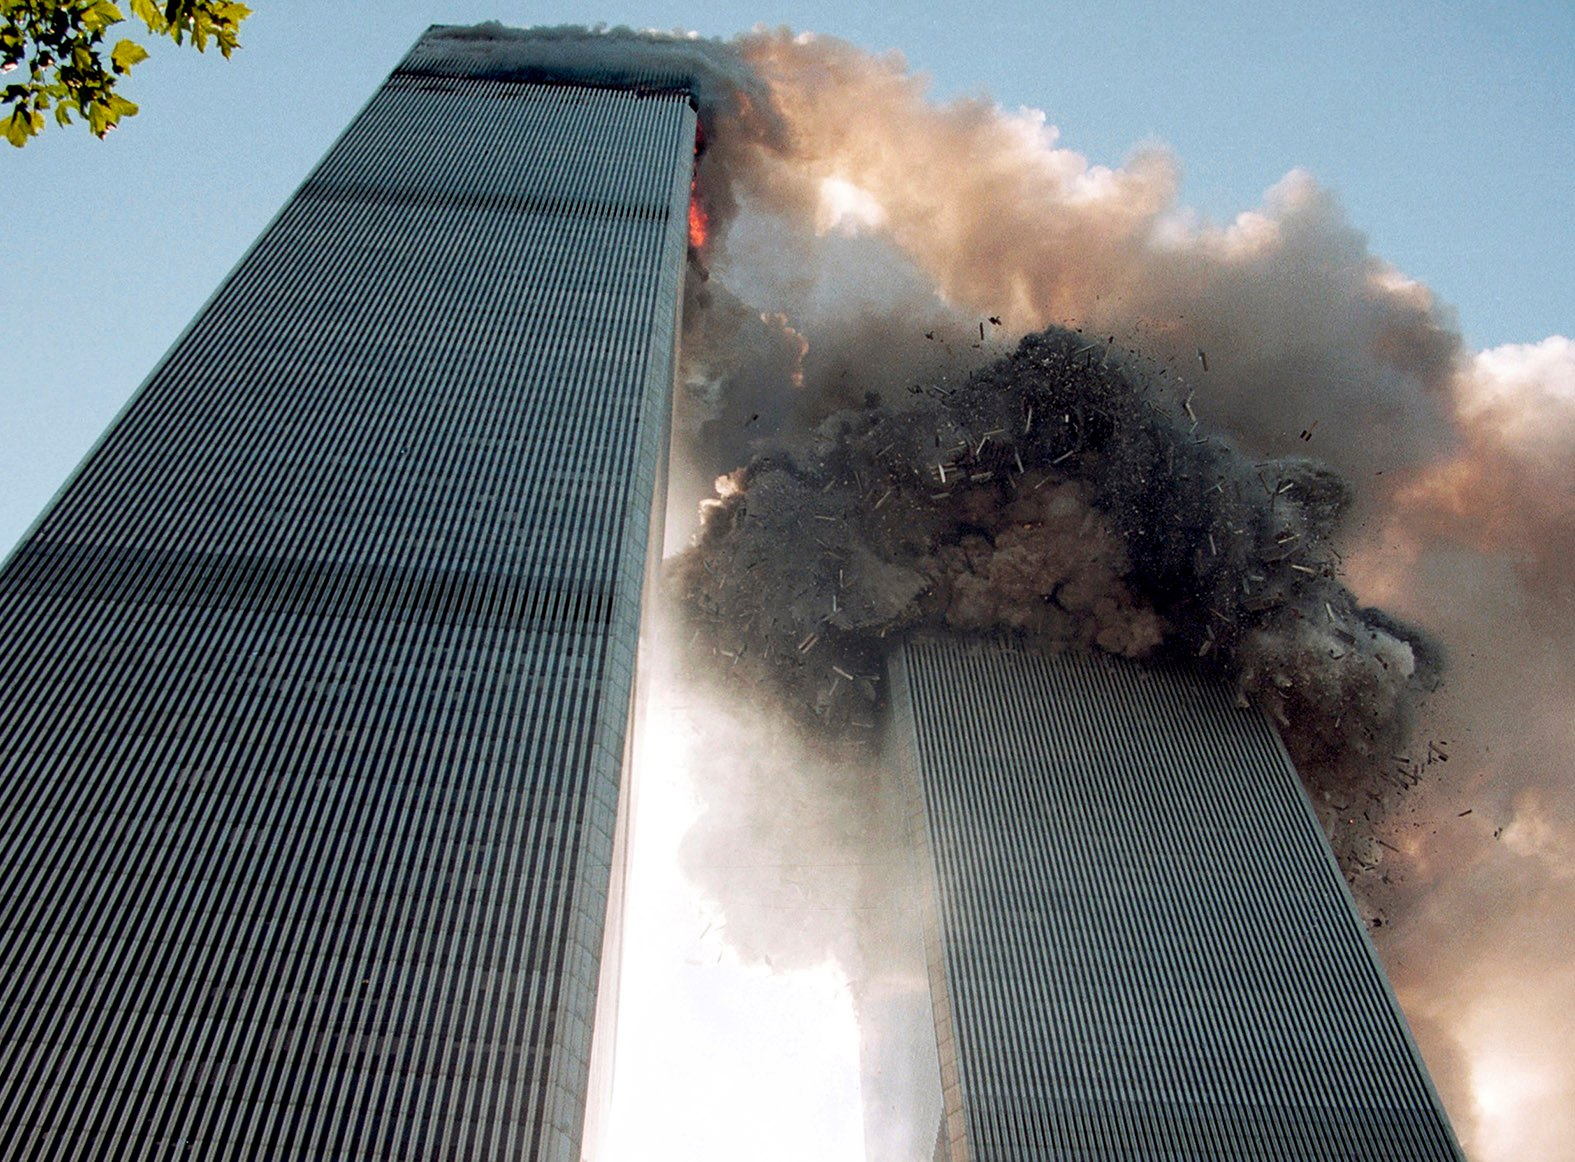 Сколько этажей было в башнях близнецах. Башни Близнецы ВТЦ внутри. Всемирный торговый центр башни Близнецы внутри офисы. Падающий человек 11 сентября.